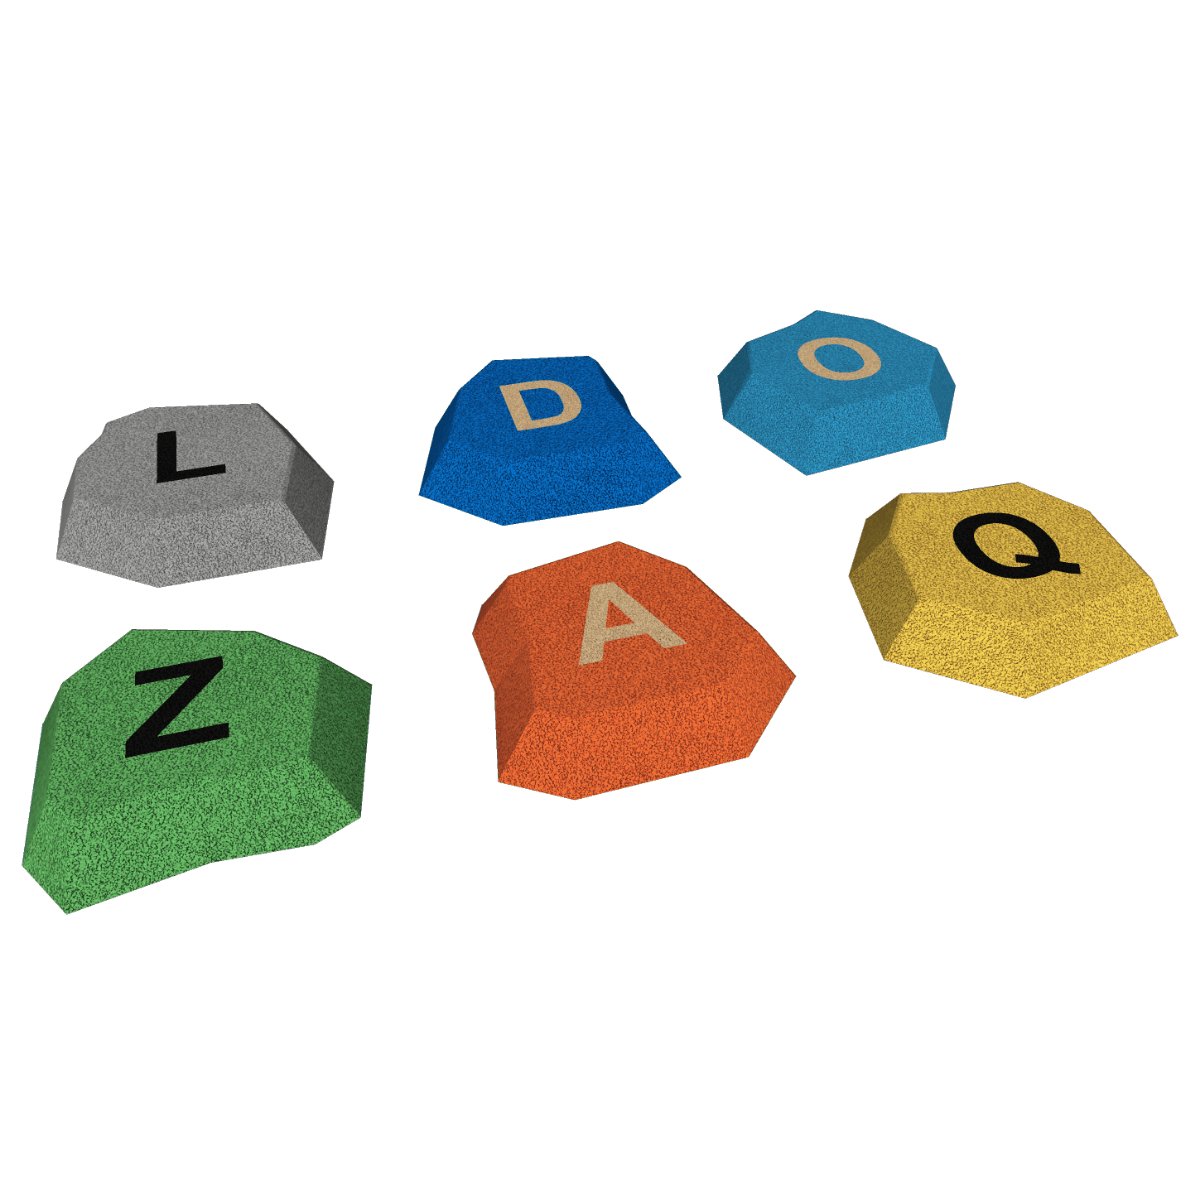 Stein mit Buchstaben (A-Z) 3D UV Farben - Riteco AG